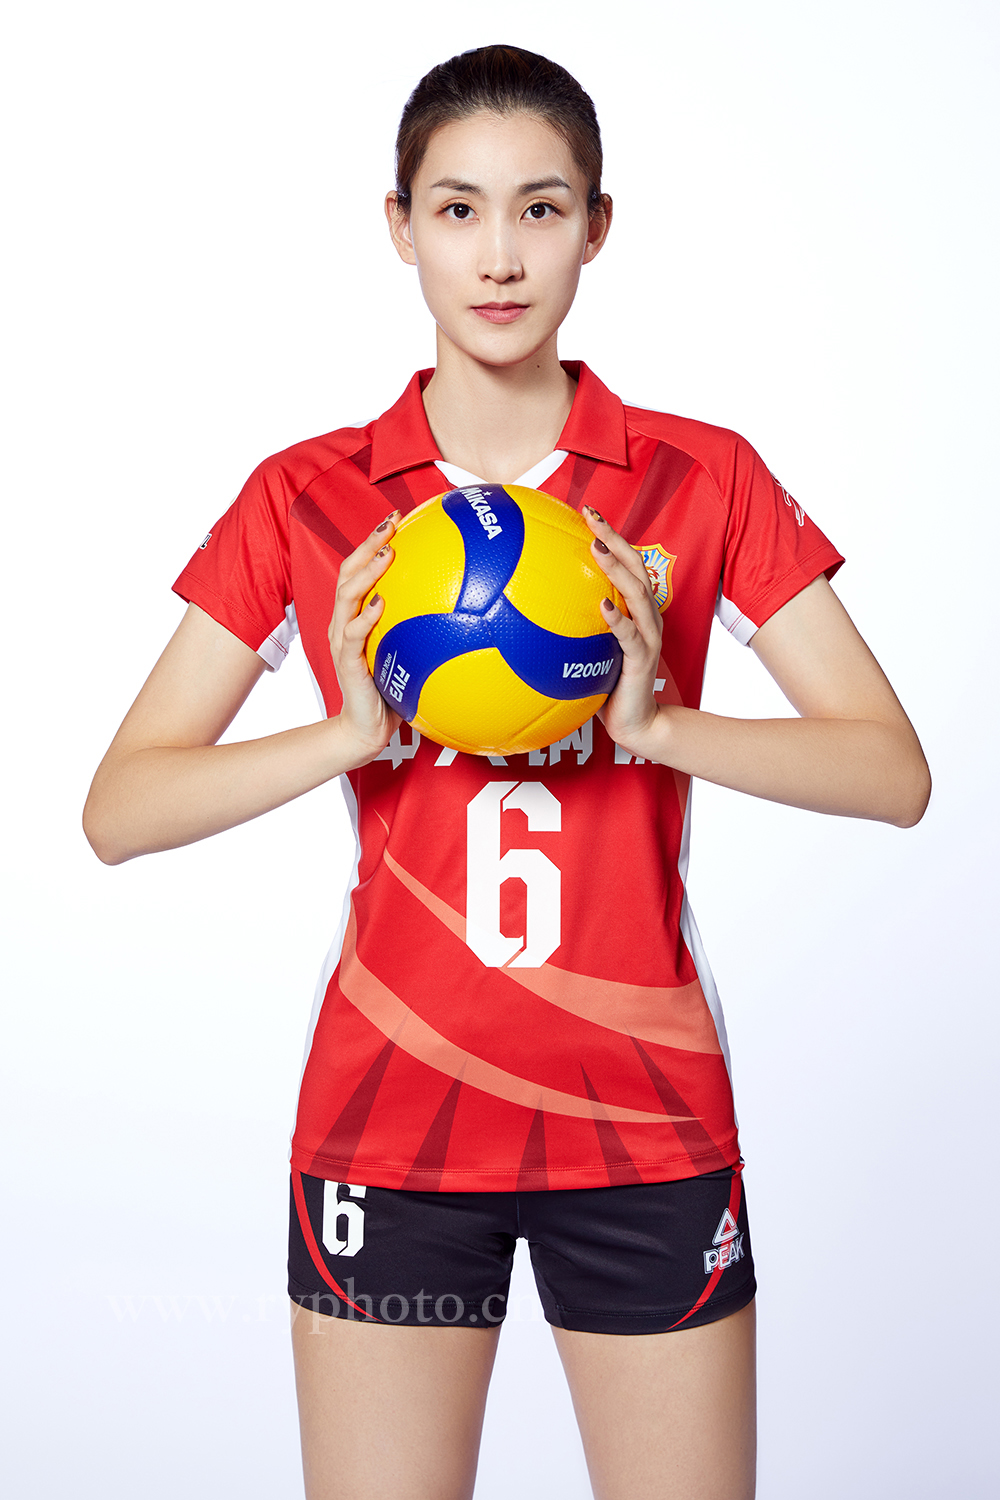 江苏女排定妆照-体育运动员形象照宣传照广告宣传图片 中国女排国家队(图2)